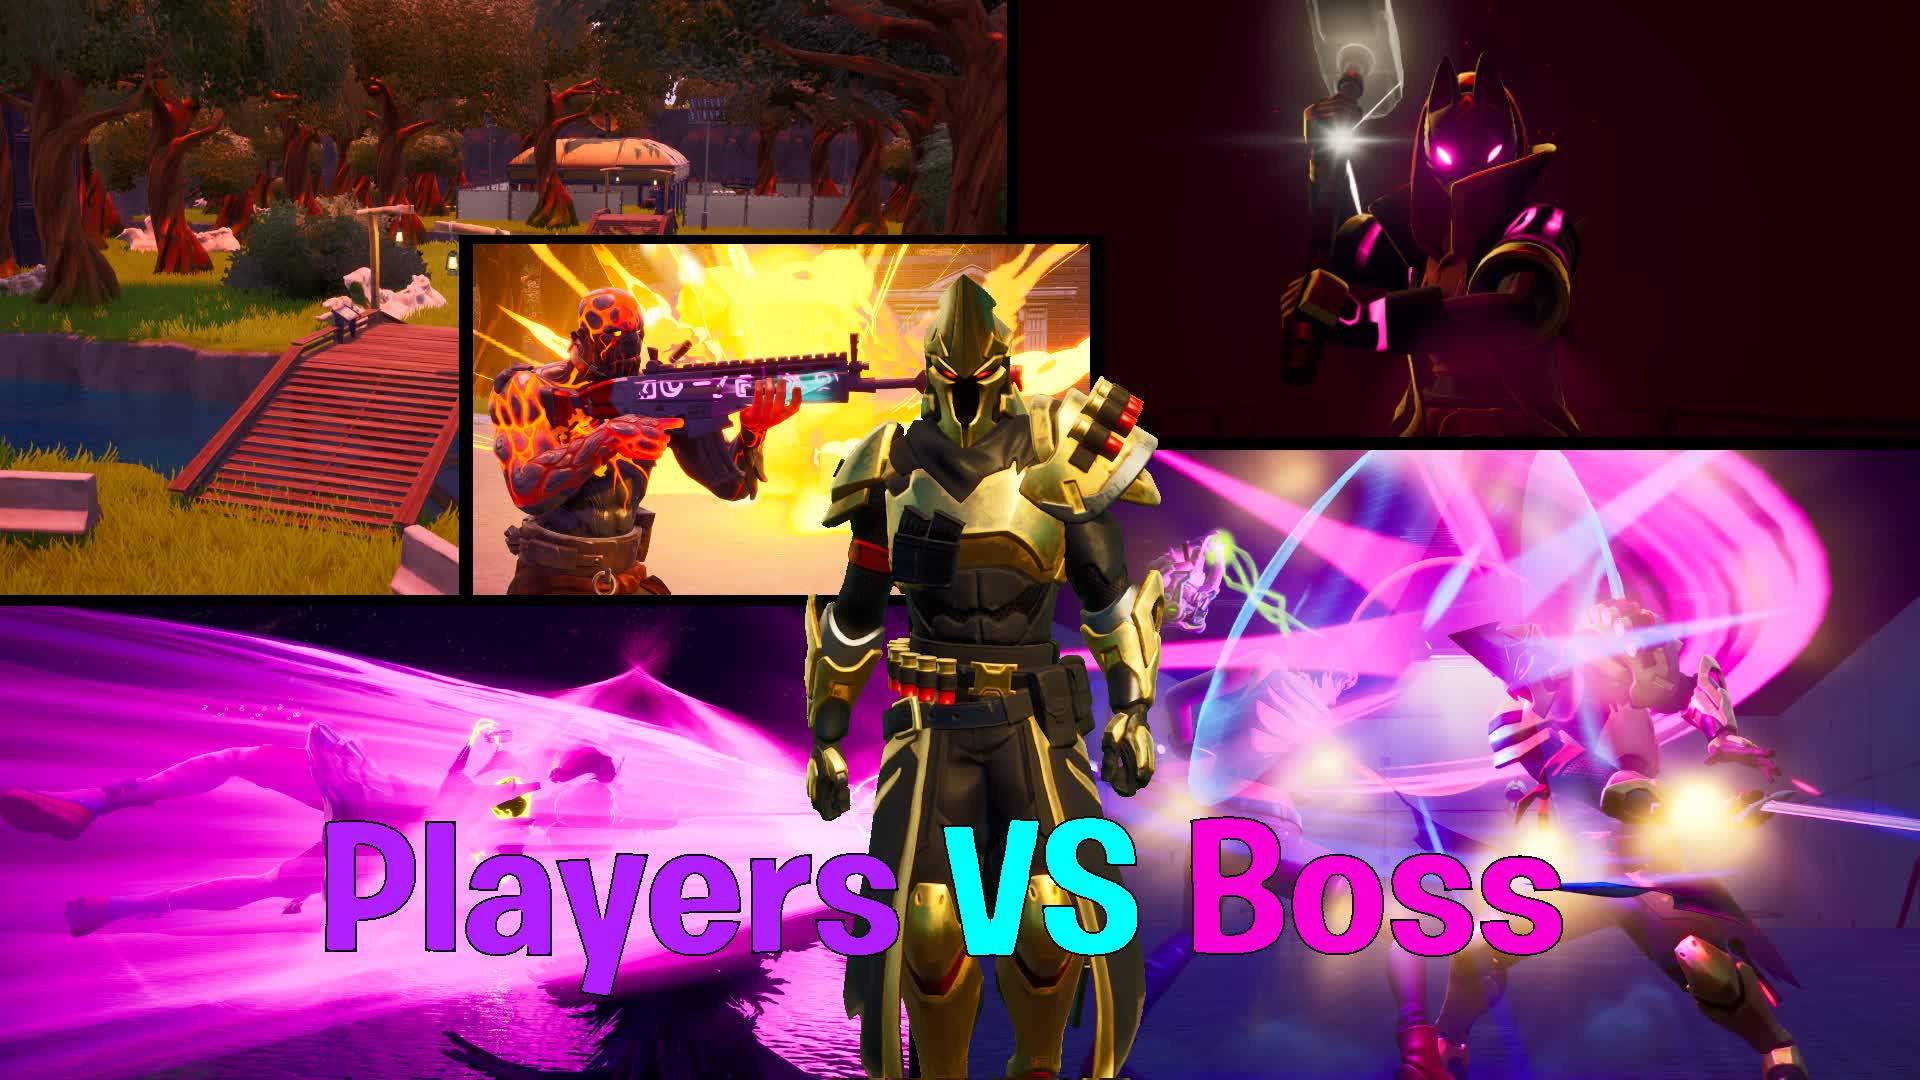 Players VS Boss